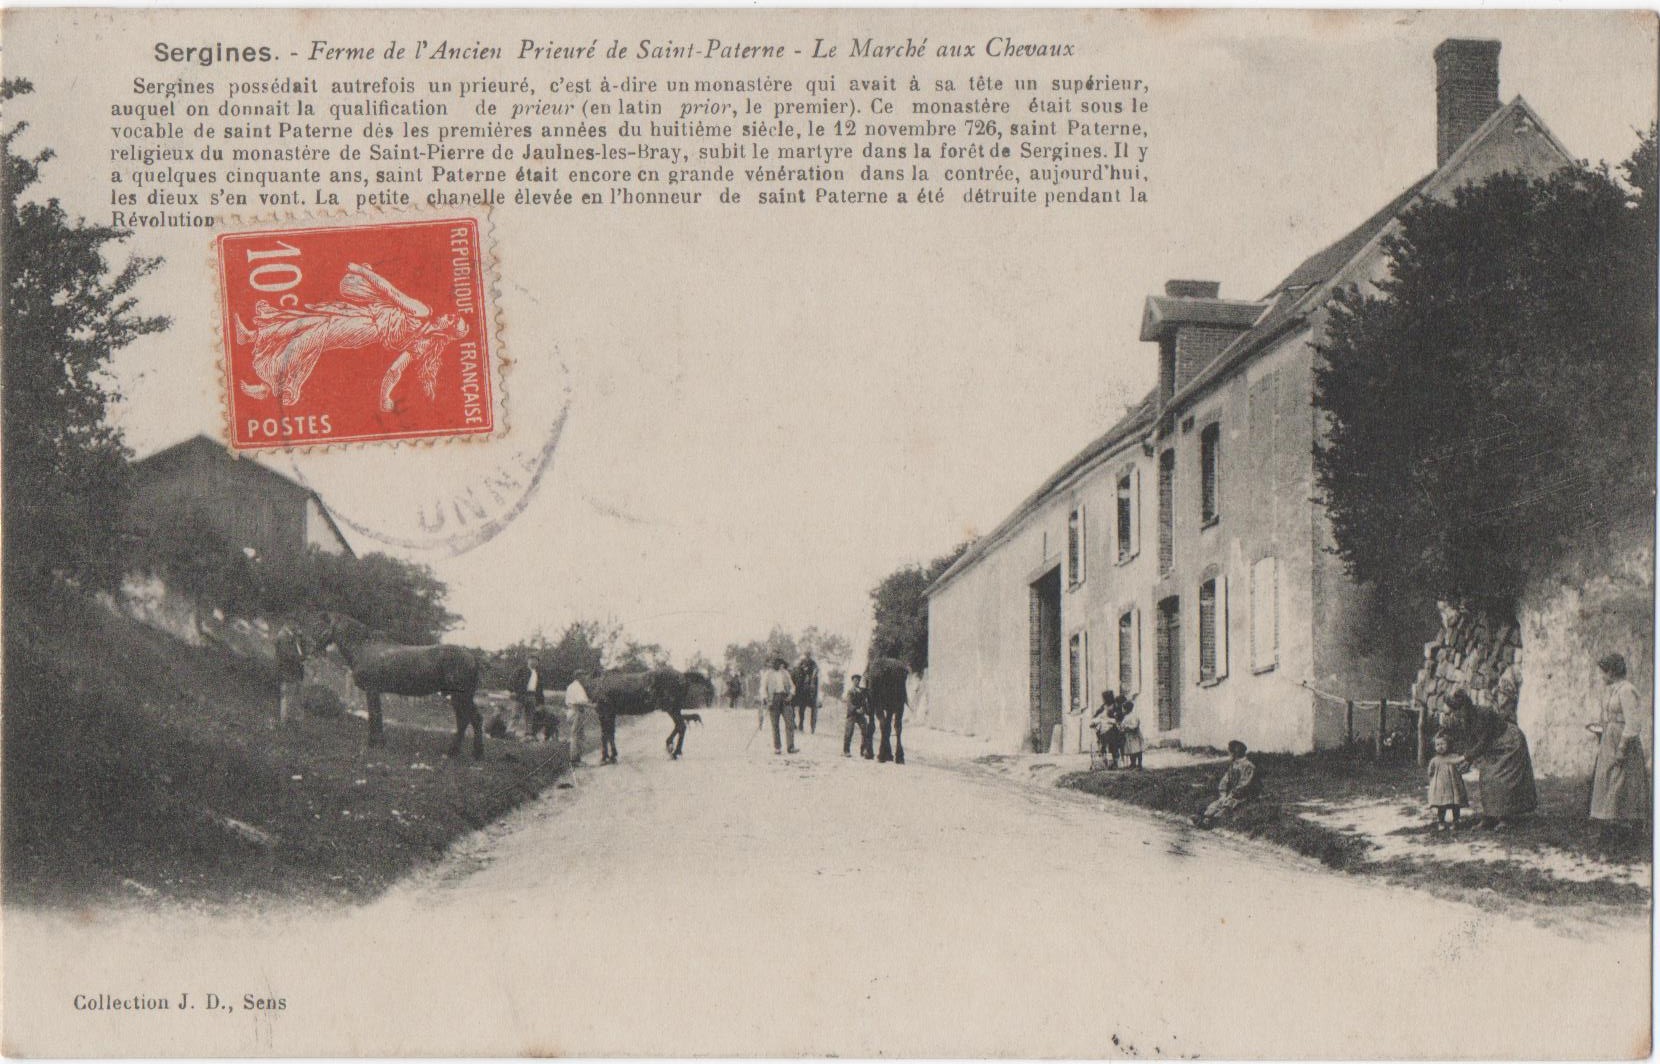 l'ancien prieuré, rue du Marché aux Chevaux